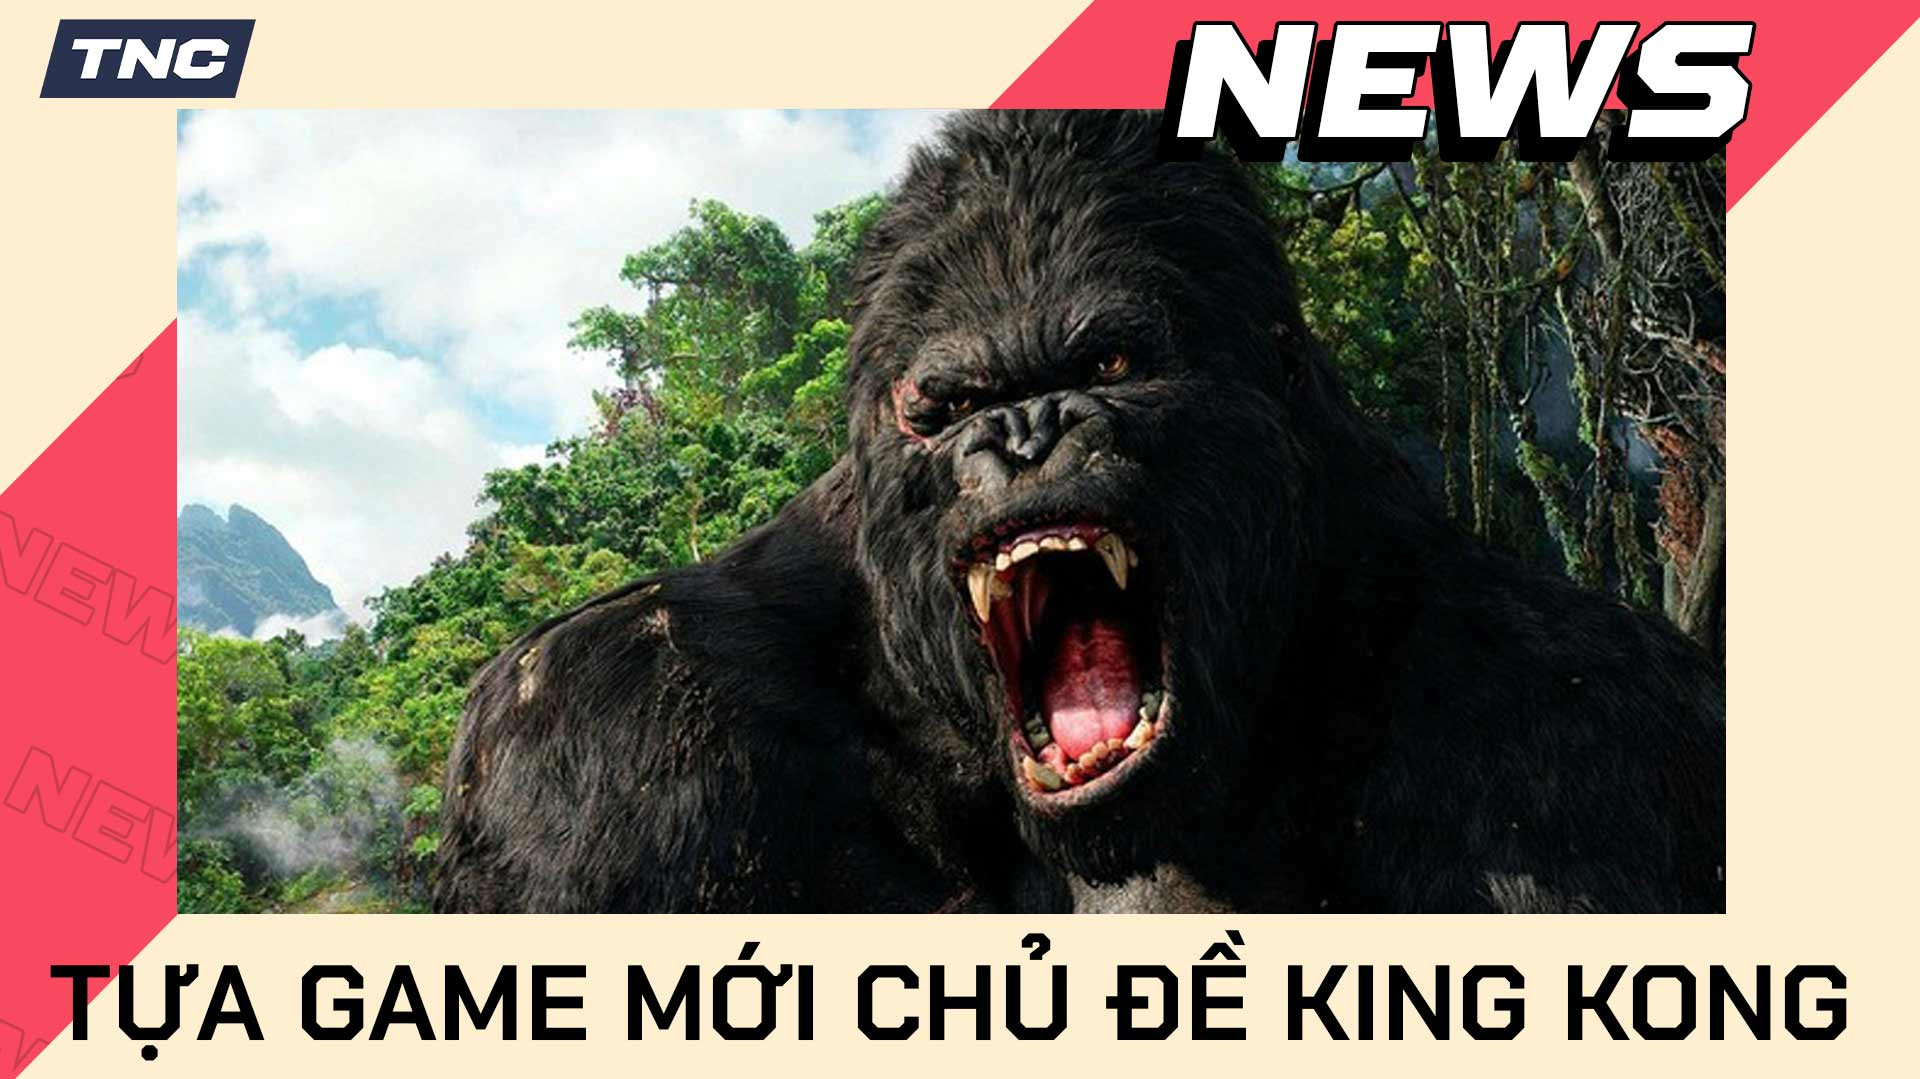 Sắp xuất hiện một tựa game mới lấy chủ đề King Kong